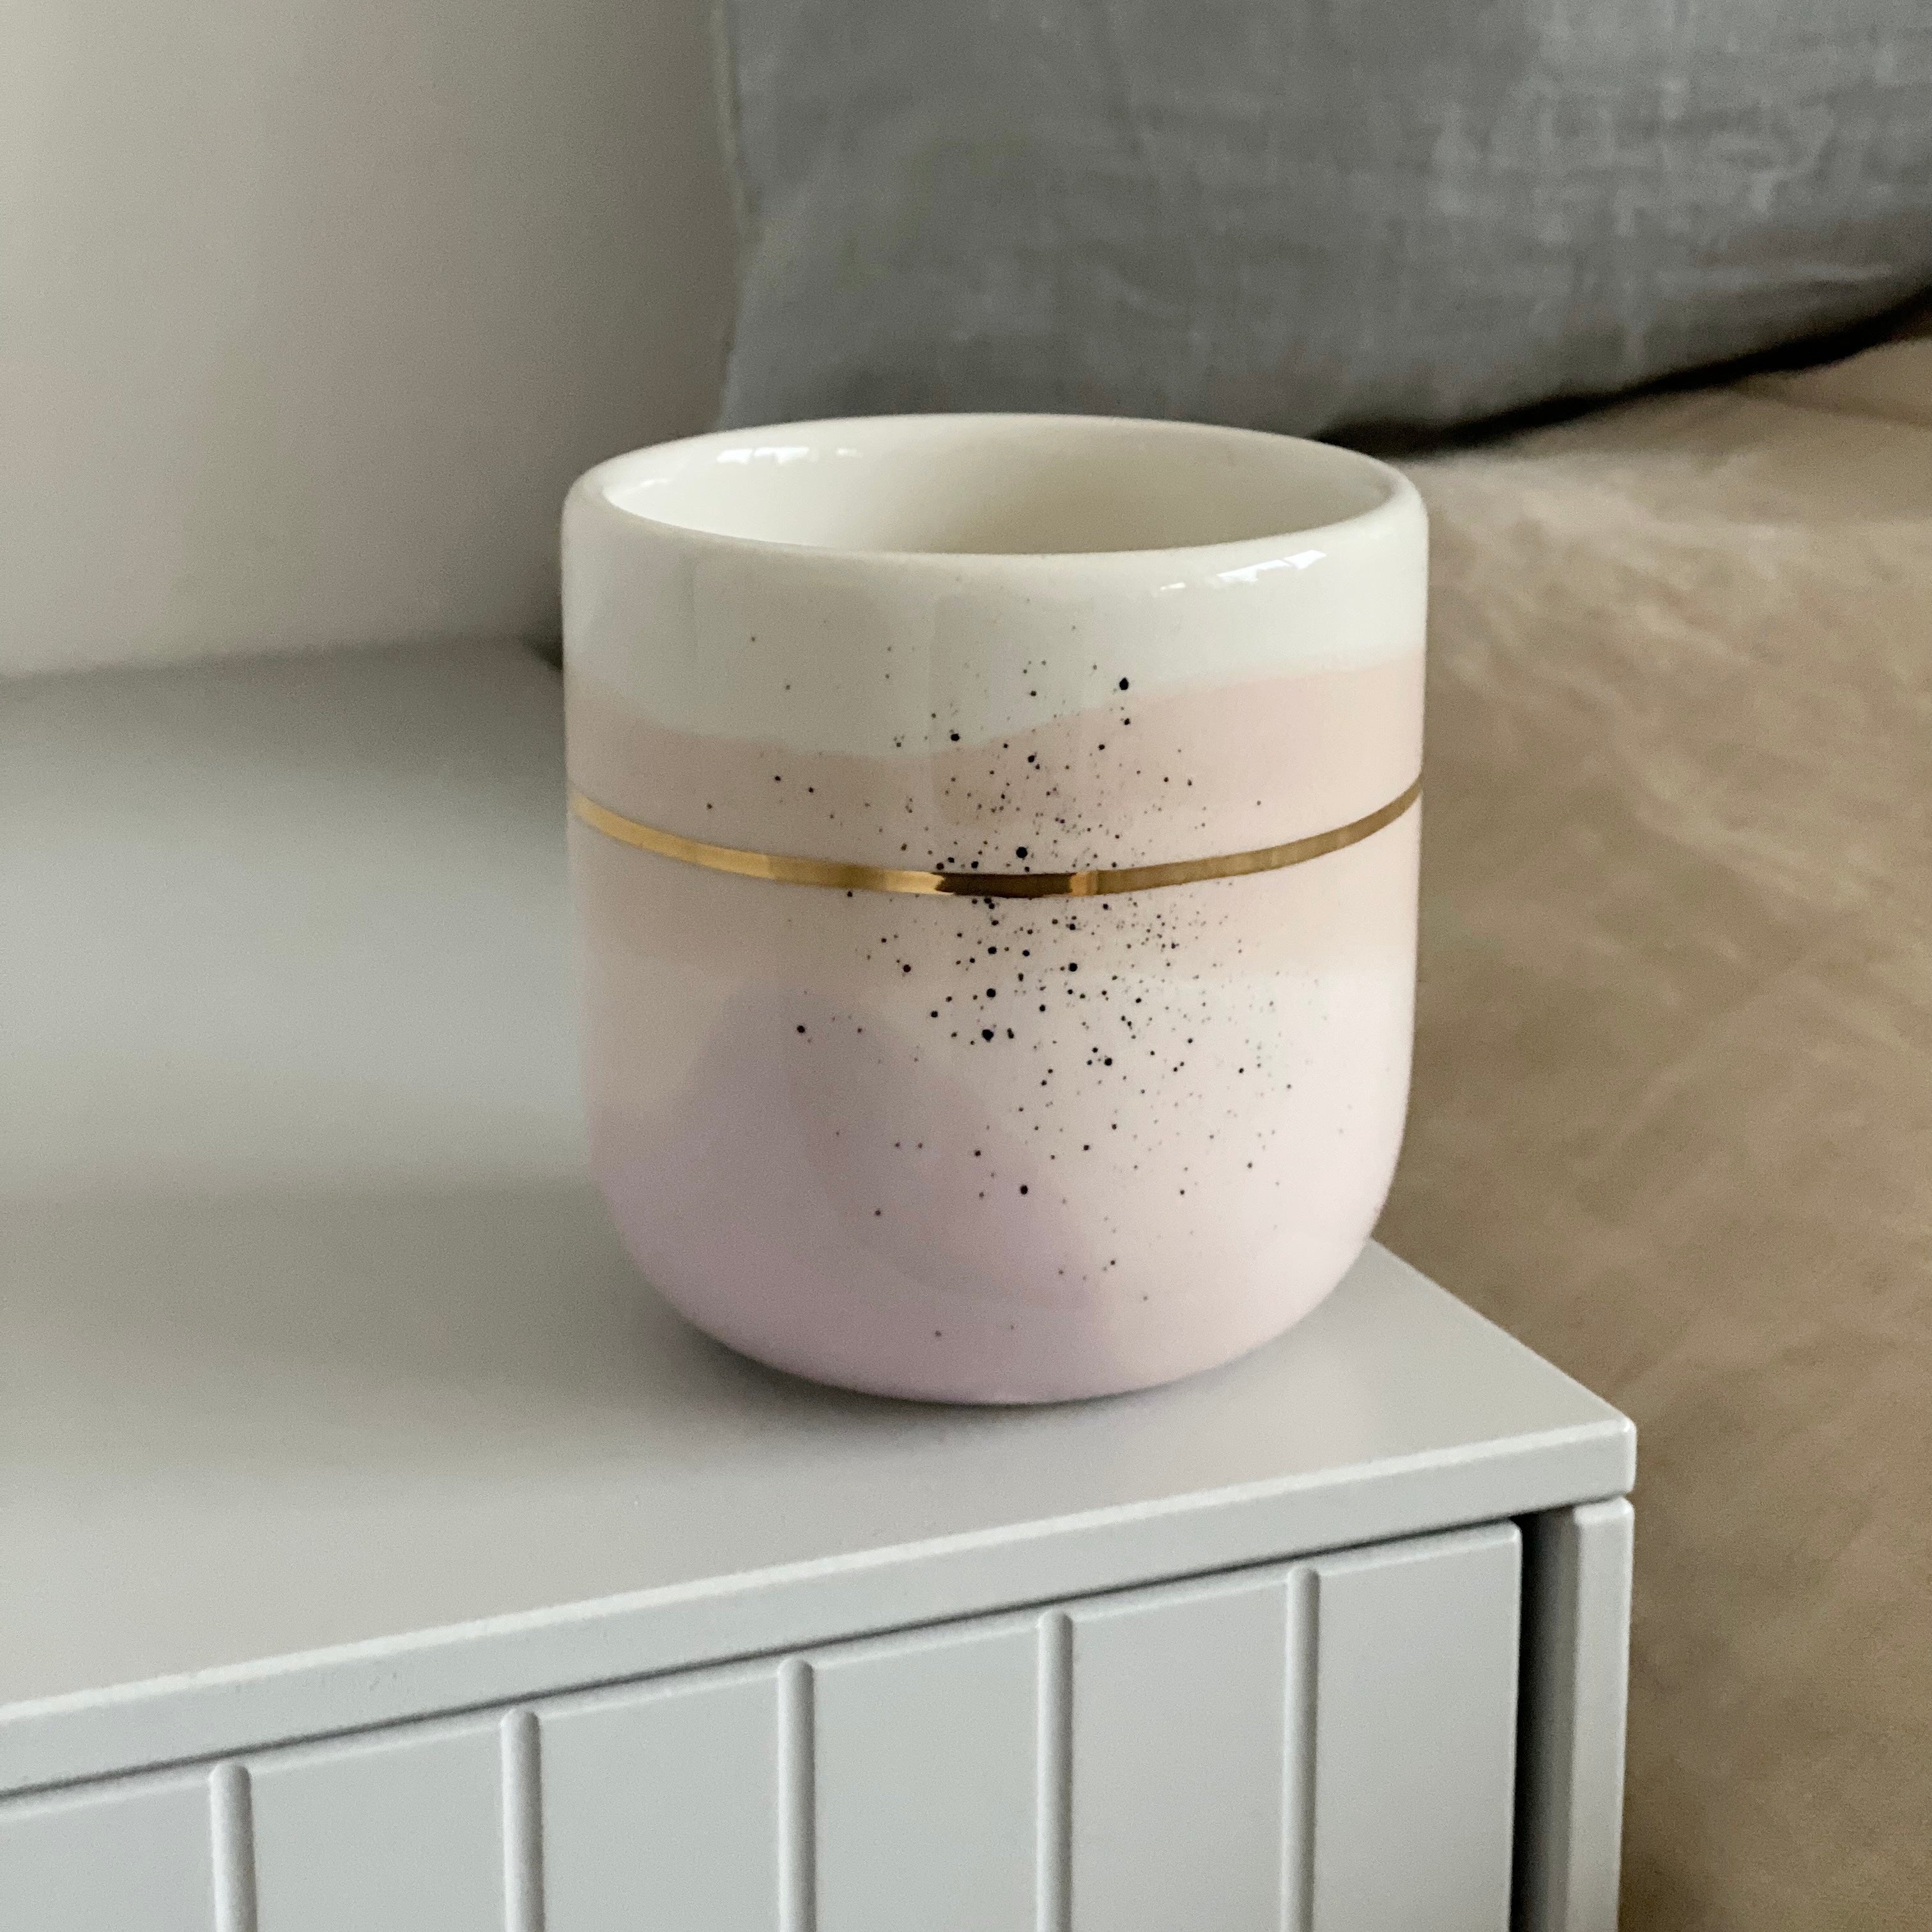 Marinski Heartmades latte kop Landscape - light pink, crema and lavender